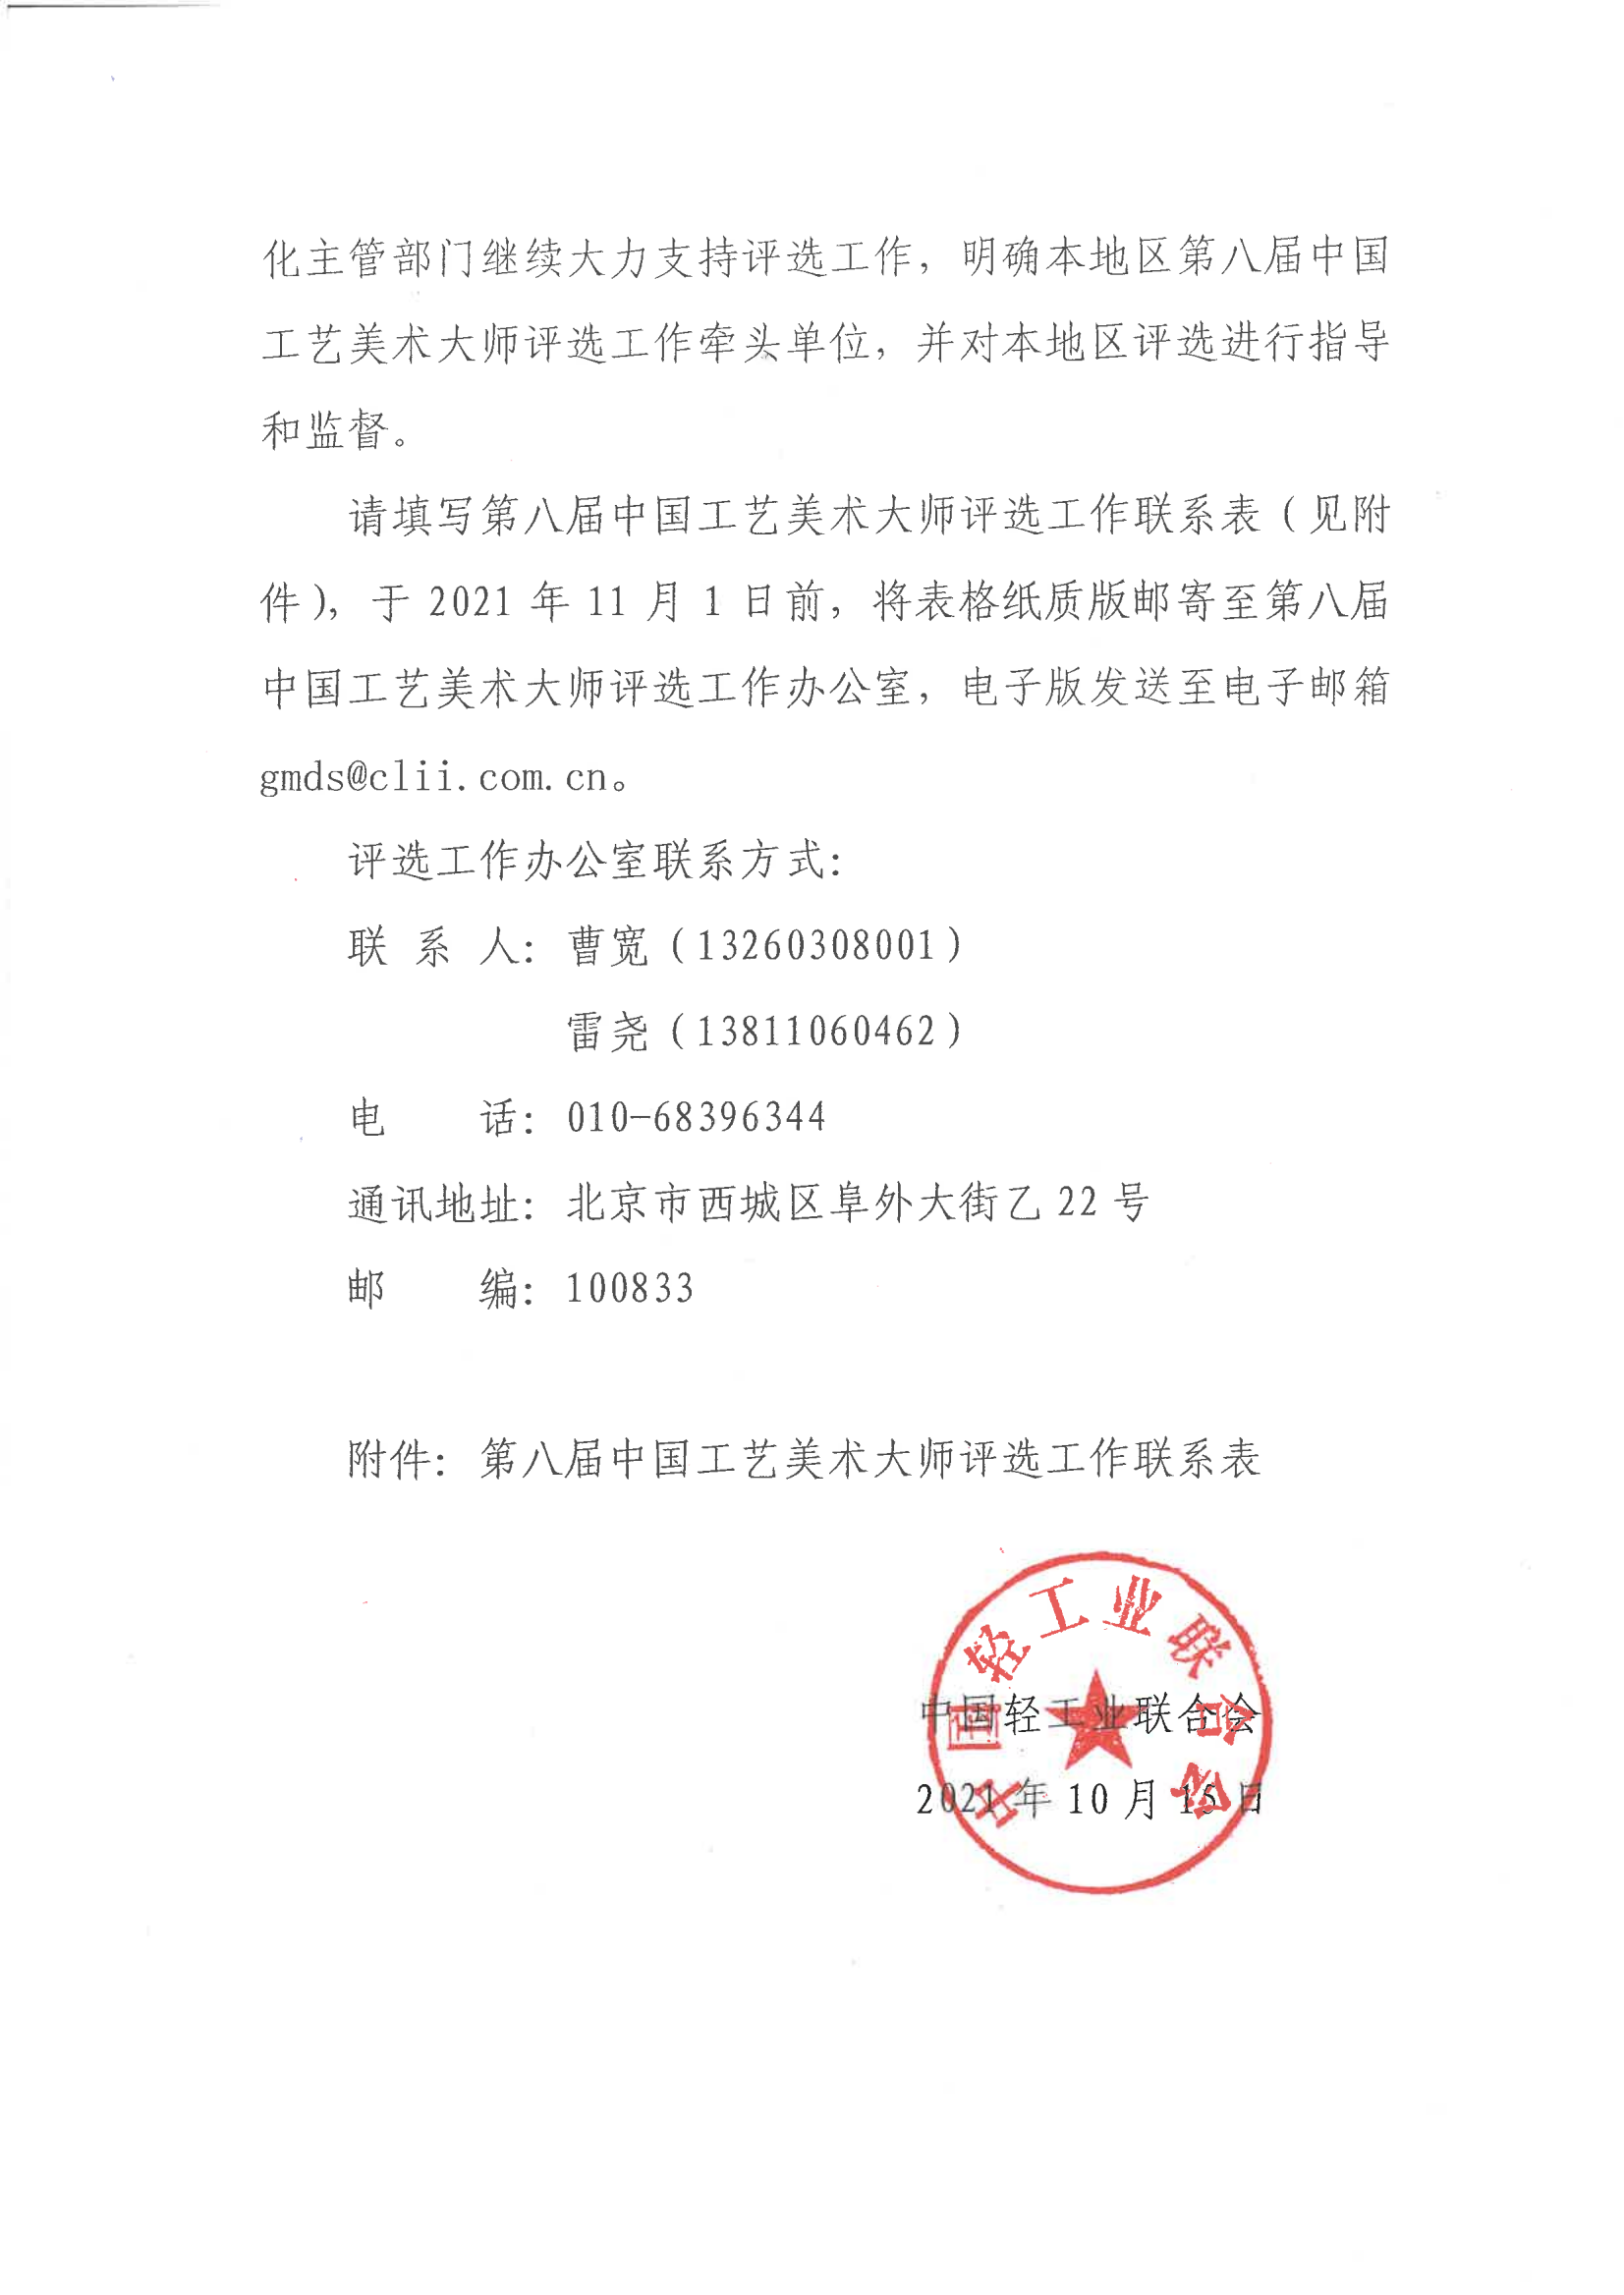 关于请明确第八届中国工艺美术大师评选工作牵头单位的函_01.png